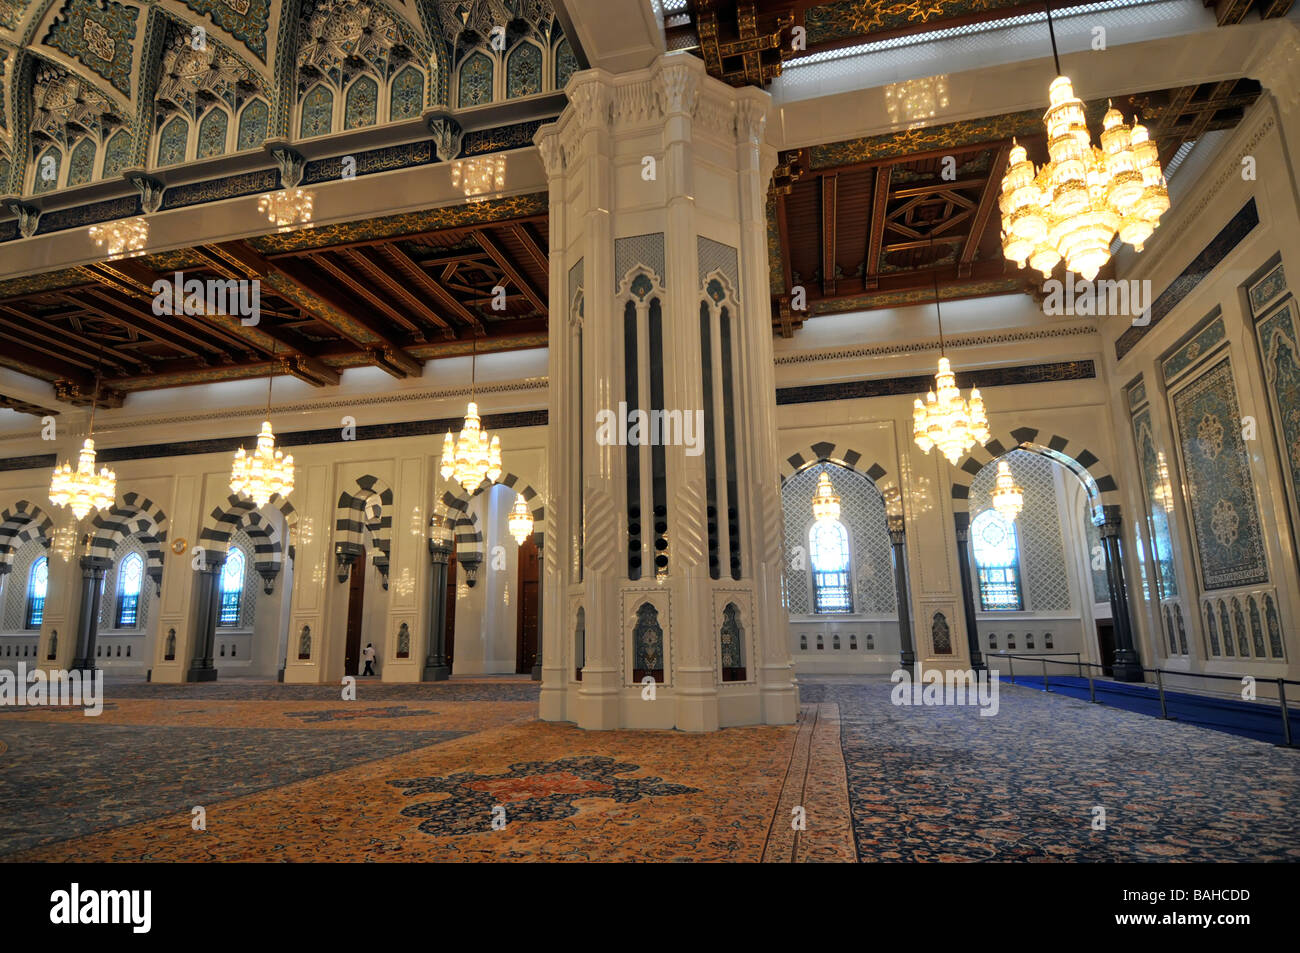 Muscat-Oman-Moschee innen mit Teppich ausgelegten Gebetsraum mit Kronleuchtern und reich verzierte Decke Stockfoto